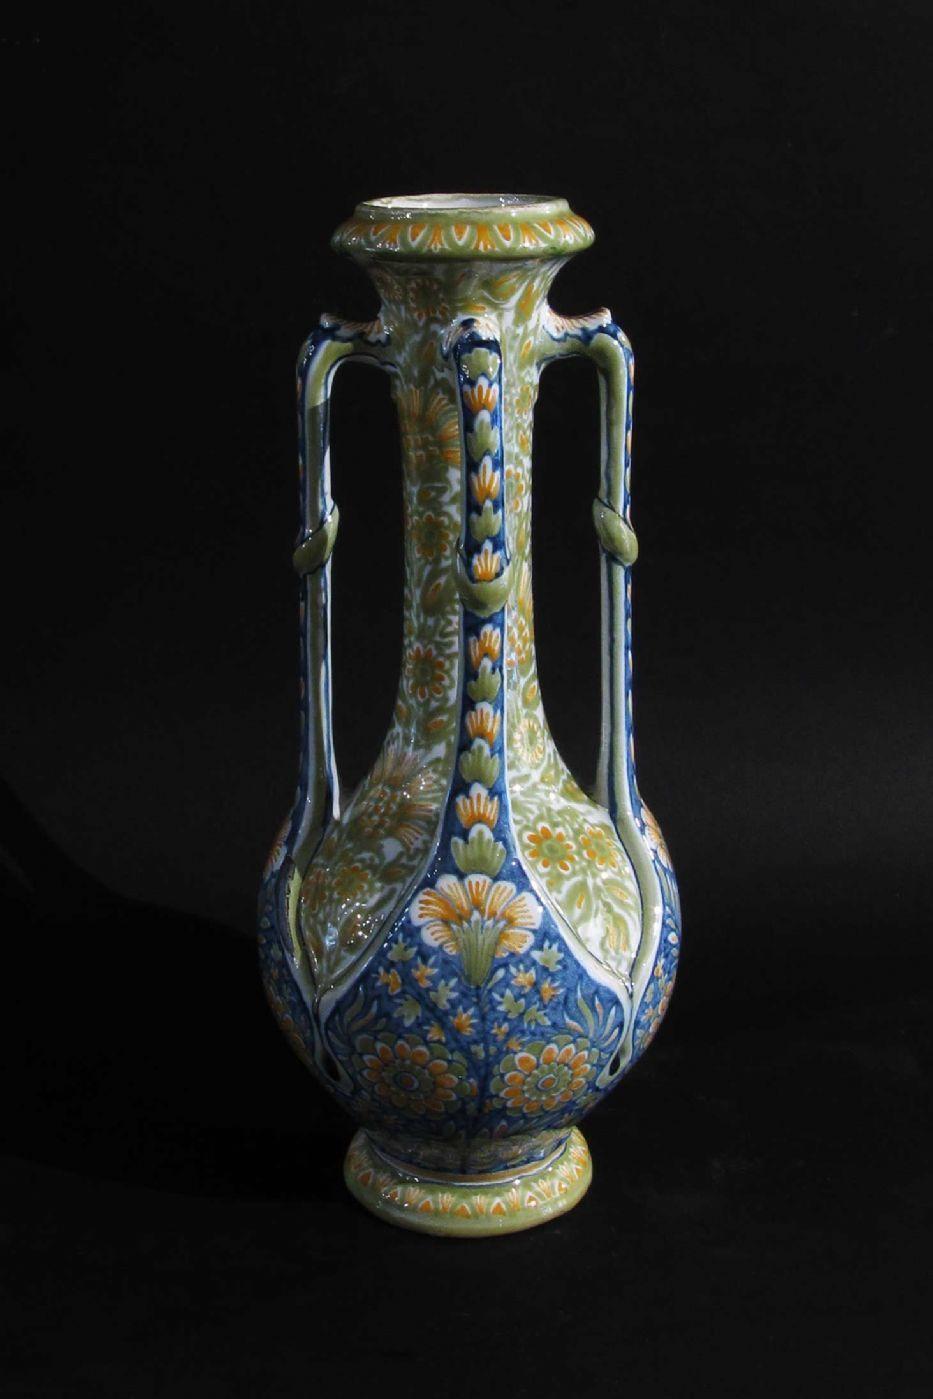 Charakteristische vierhändige polychrome Majolika-Vase, die aus der künstlerischen Zusammenarbeit von Gibus und M. Redon hervorgegangen ist. Das Objekt stellt eine Verschmelzung von Merkmalen der Neorenaissance und des Jugendstils dar. Markierung